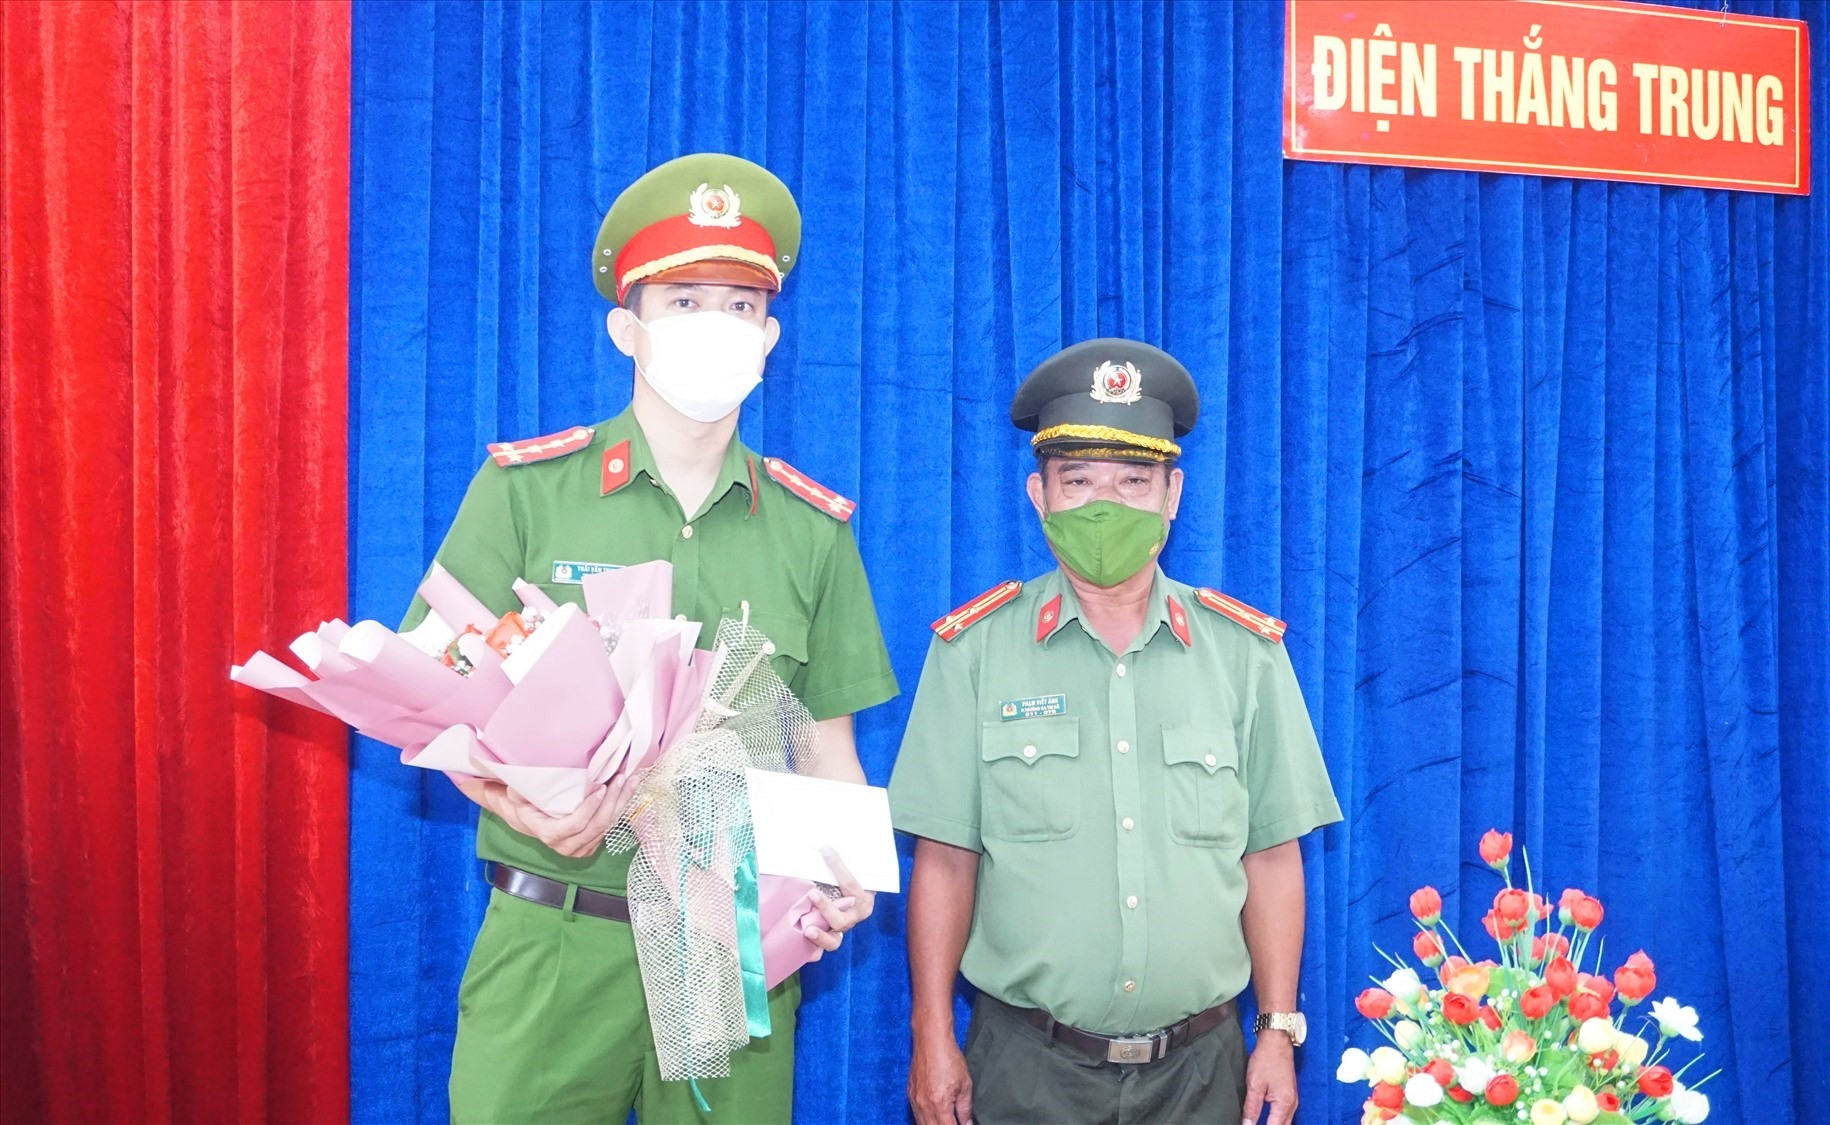 Lãnh đạo CATX Điện Bàn thưởng nóng cho Công an xã Điện Thắng Trung.